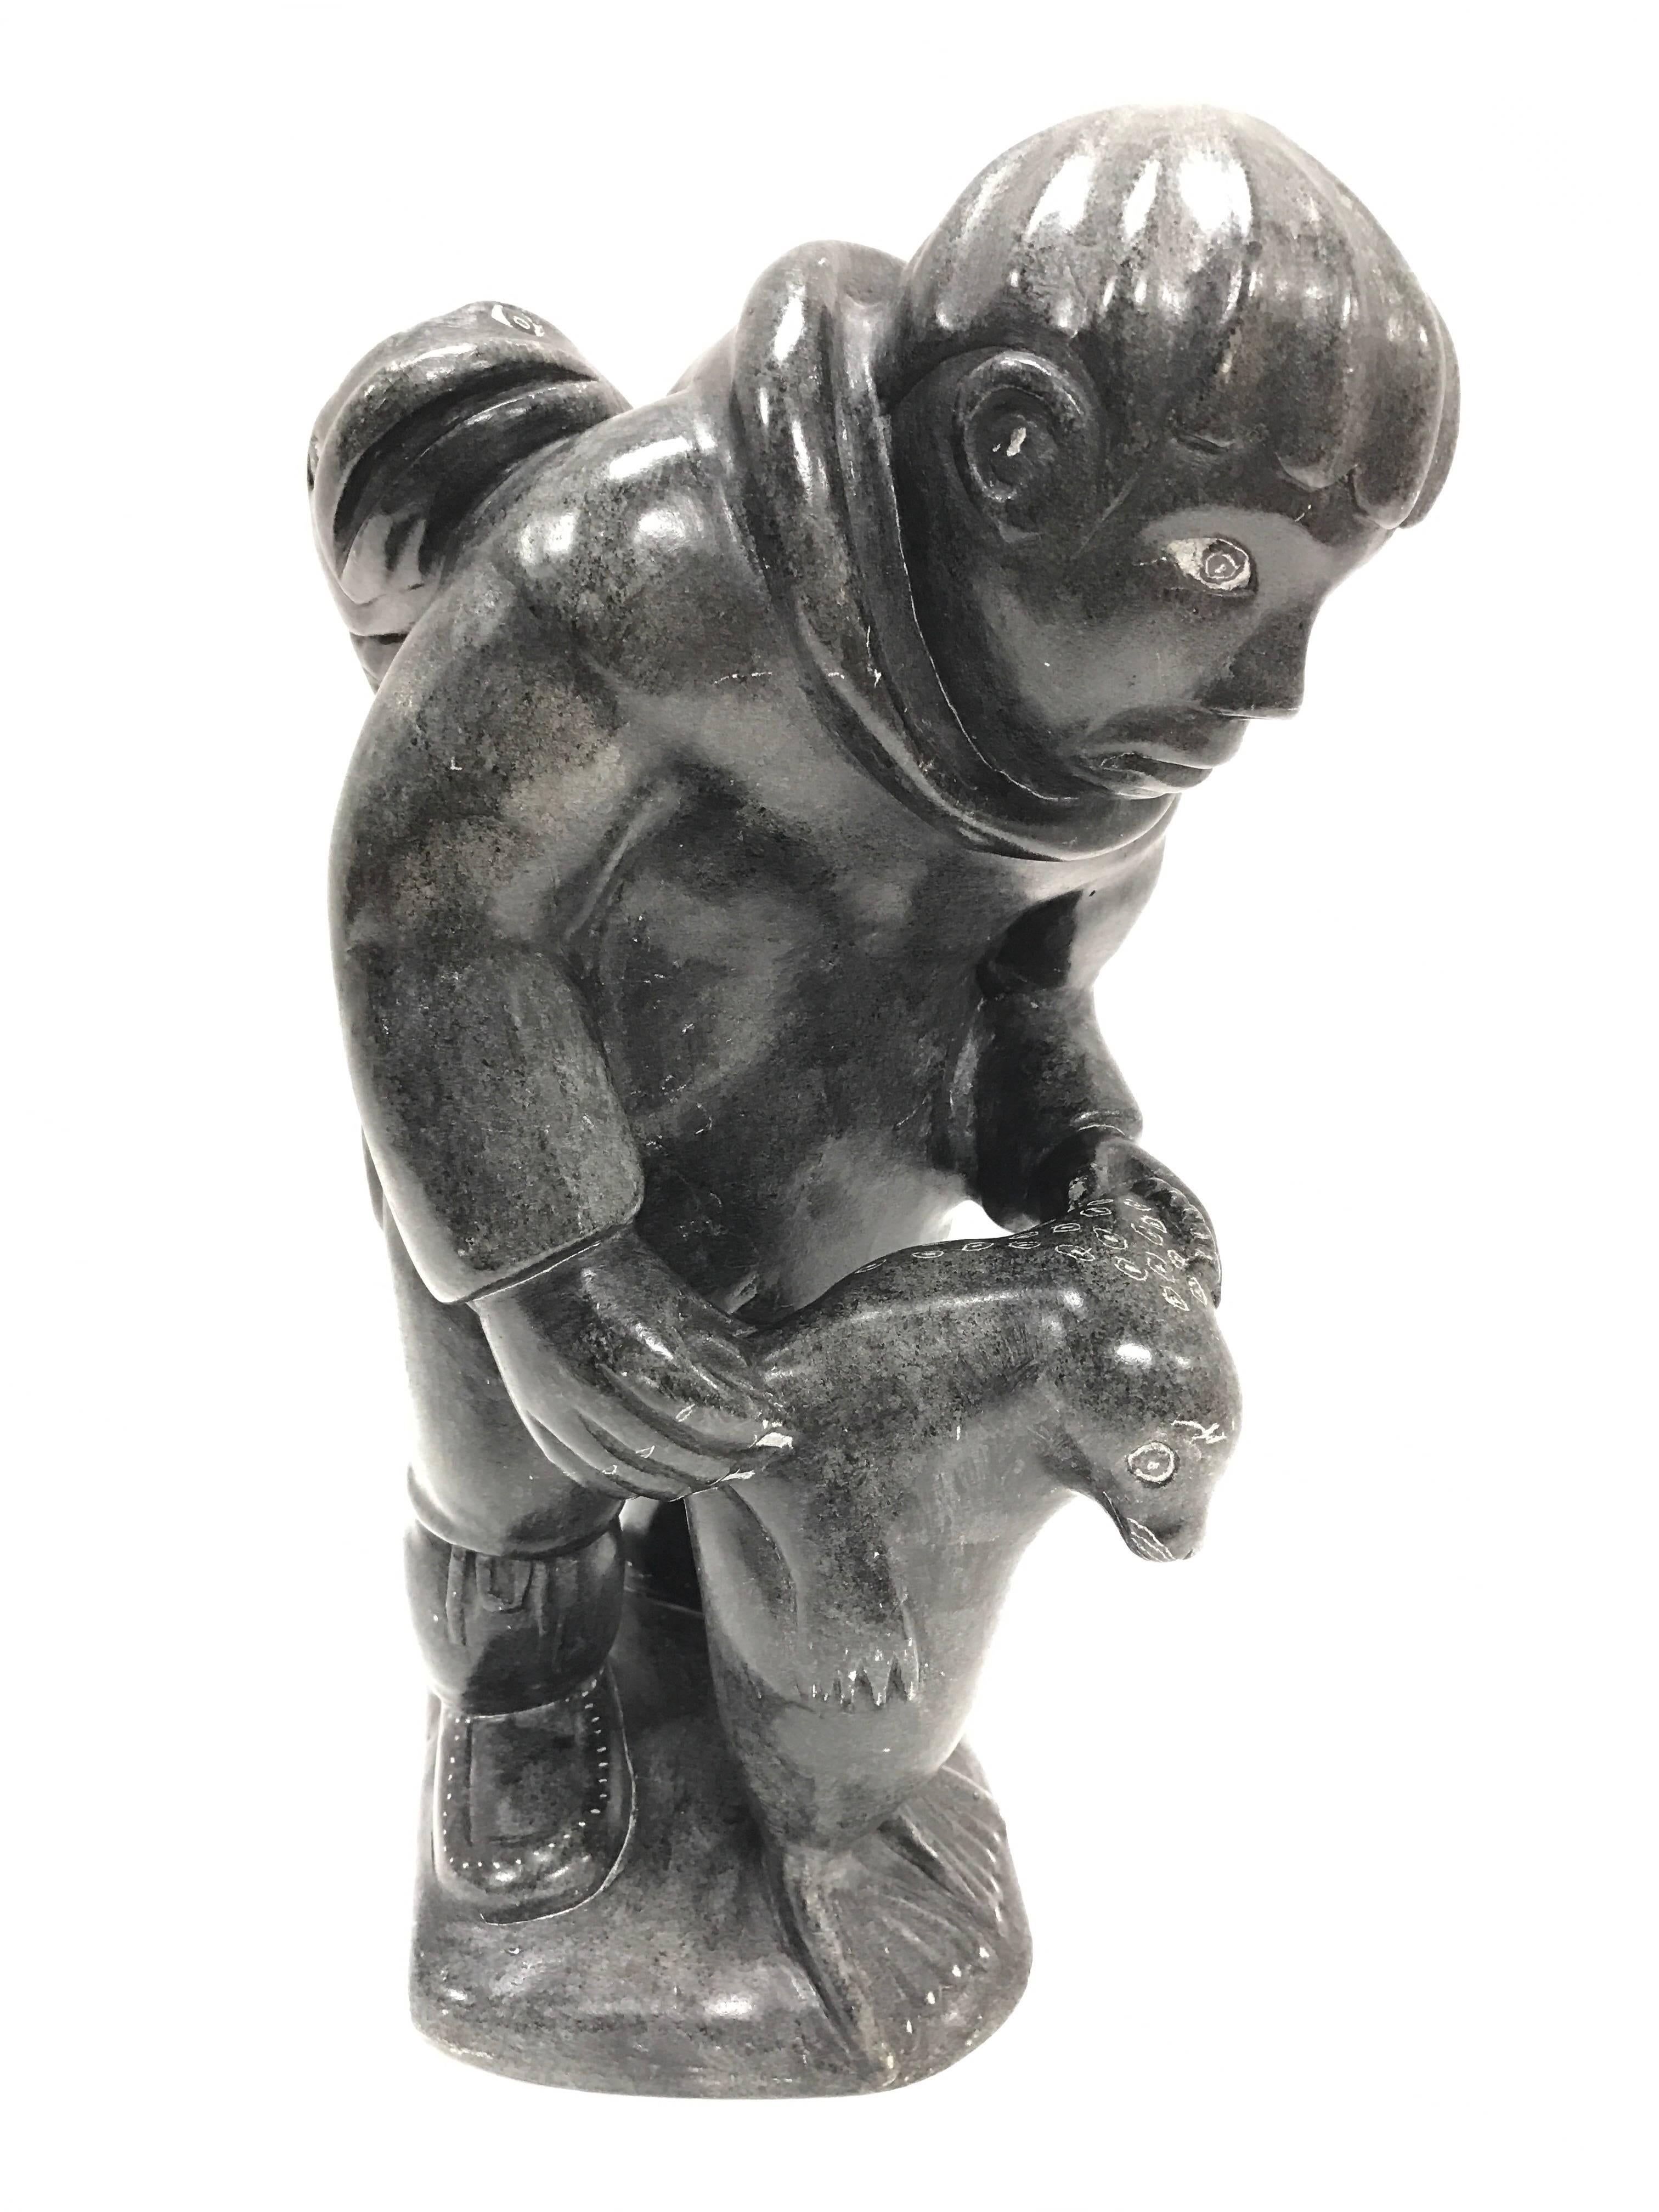 Canadian Inuit Soapstone Sculpture Figurine Art Figure